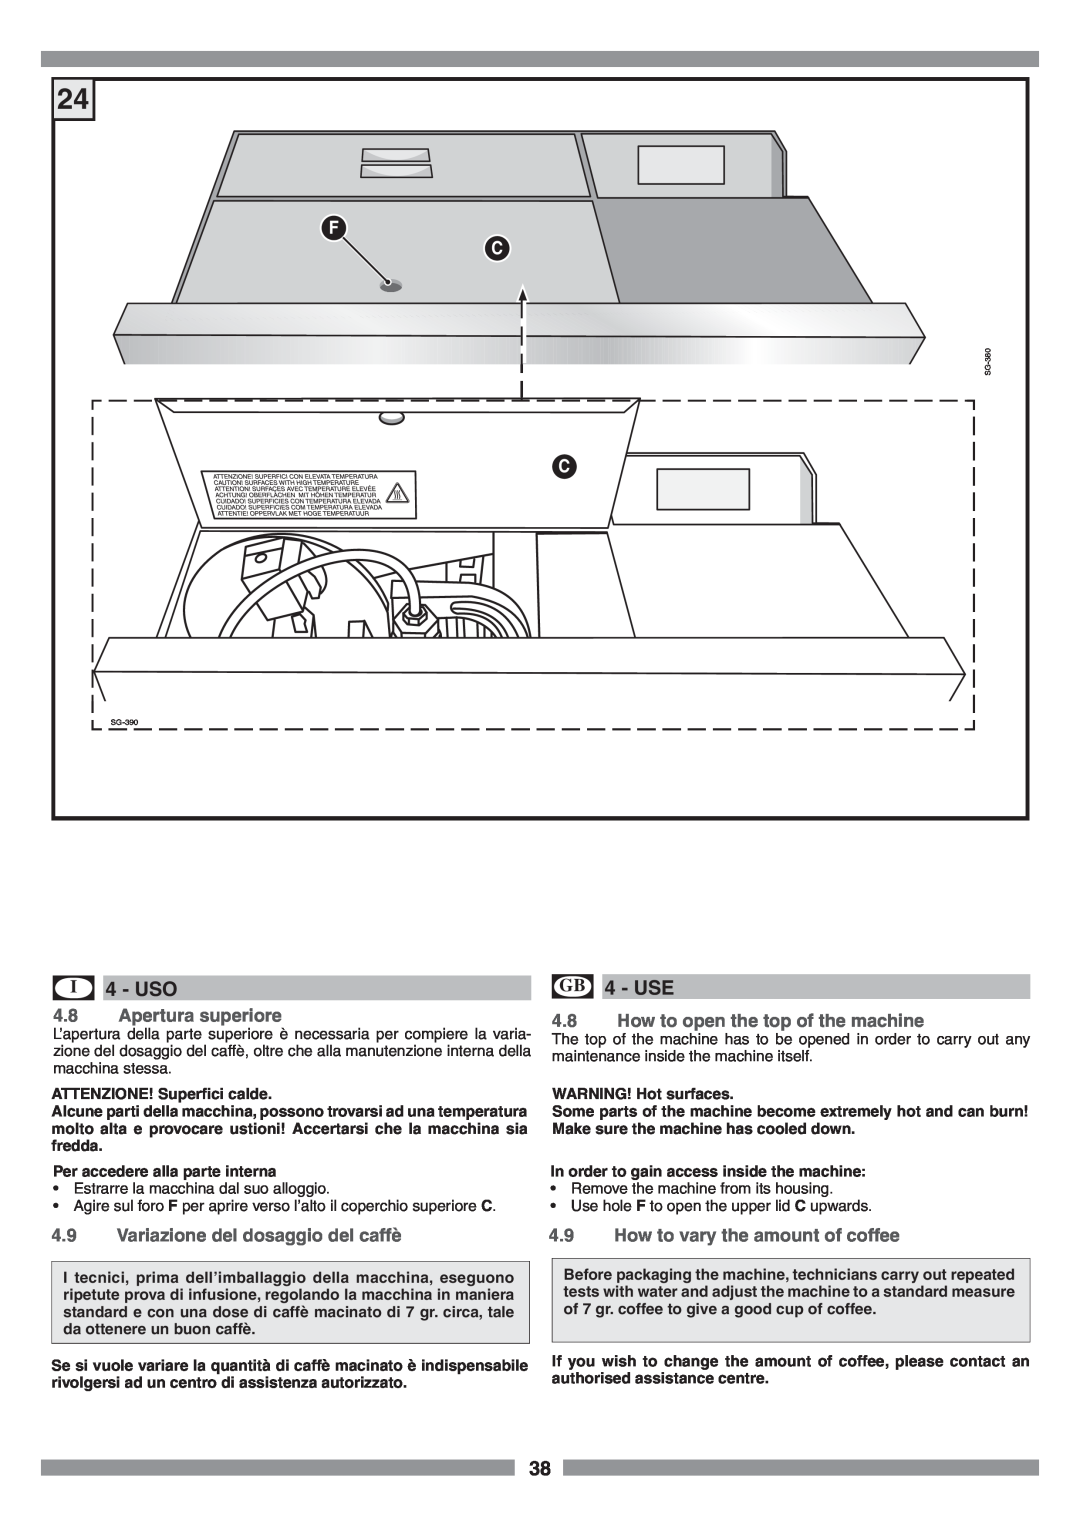 Smeg SCM1 manual Uso, Apertura superiore, How to open the top of the machine, Variazione del dosaggio del caffè, Use 